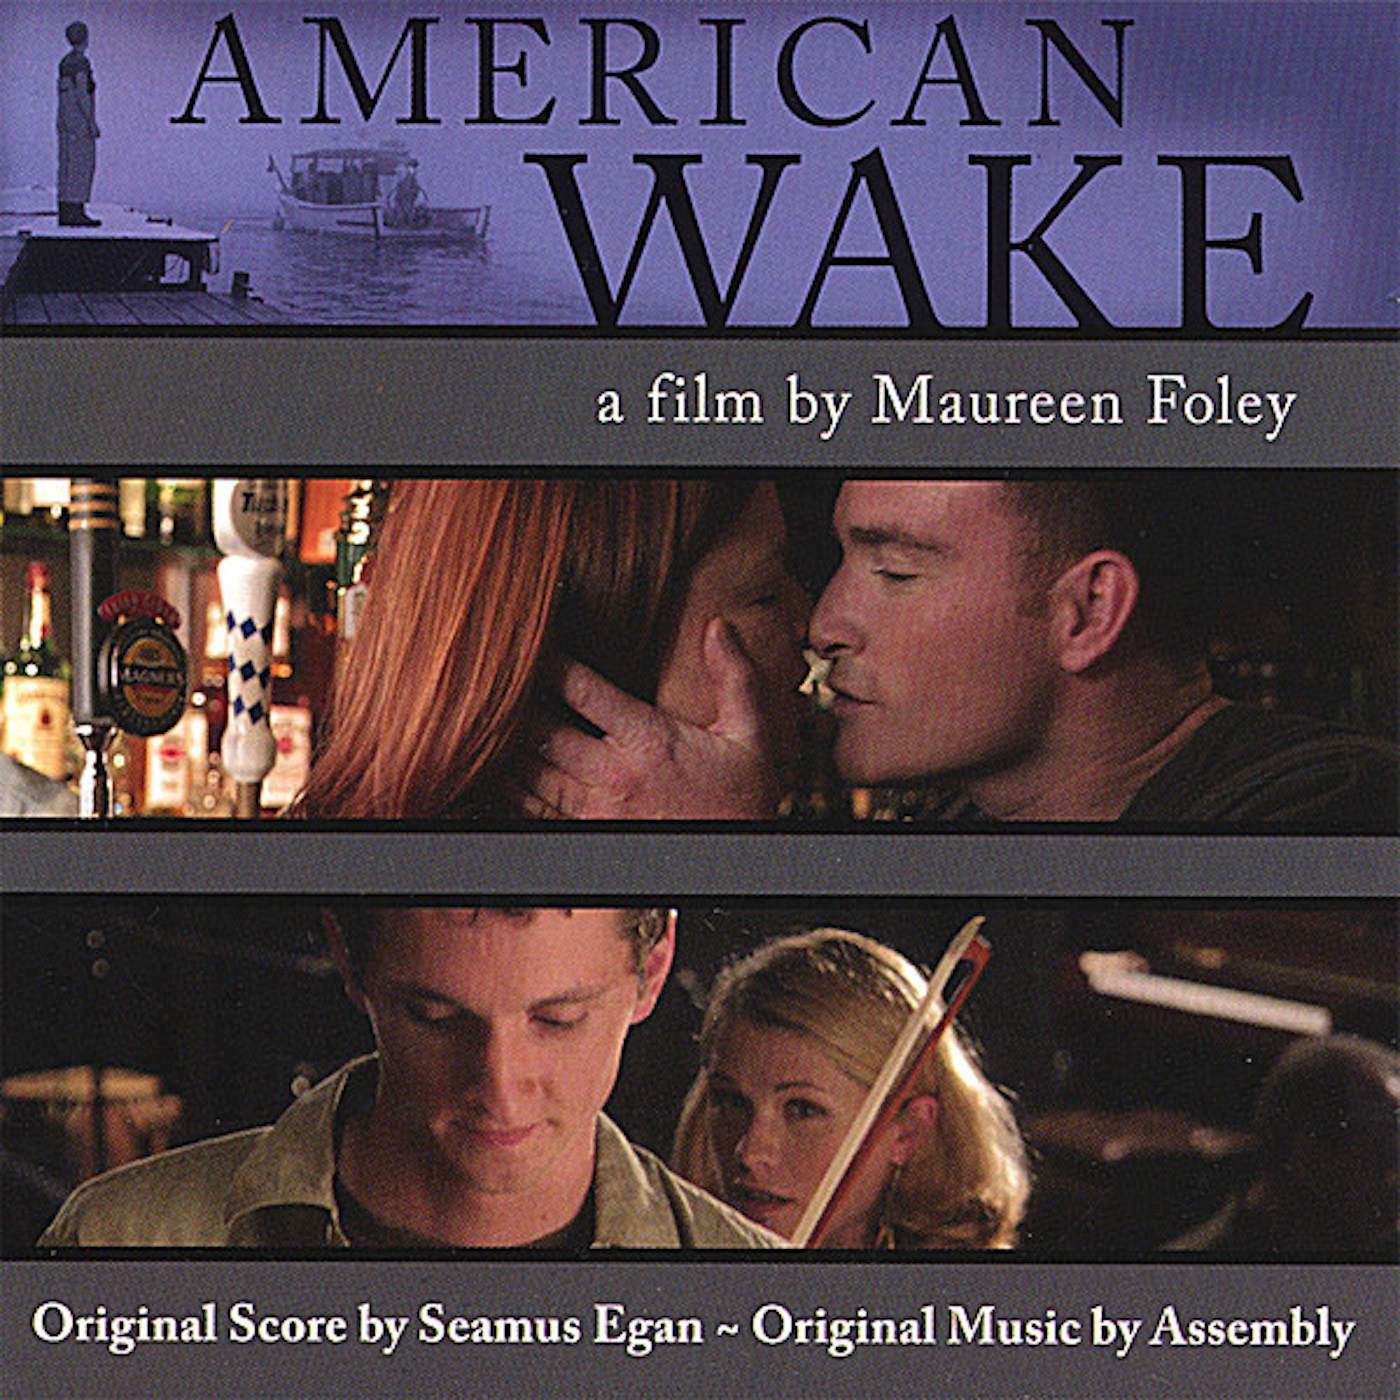 Seamus Egan AMERICAN WAKE SOUNDTRACK CD